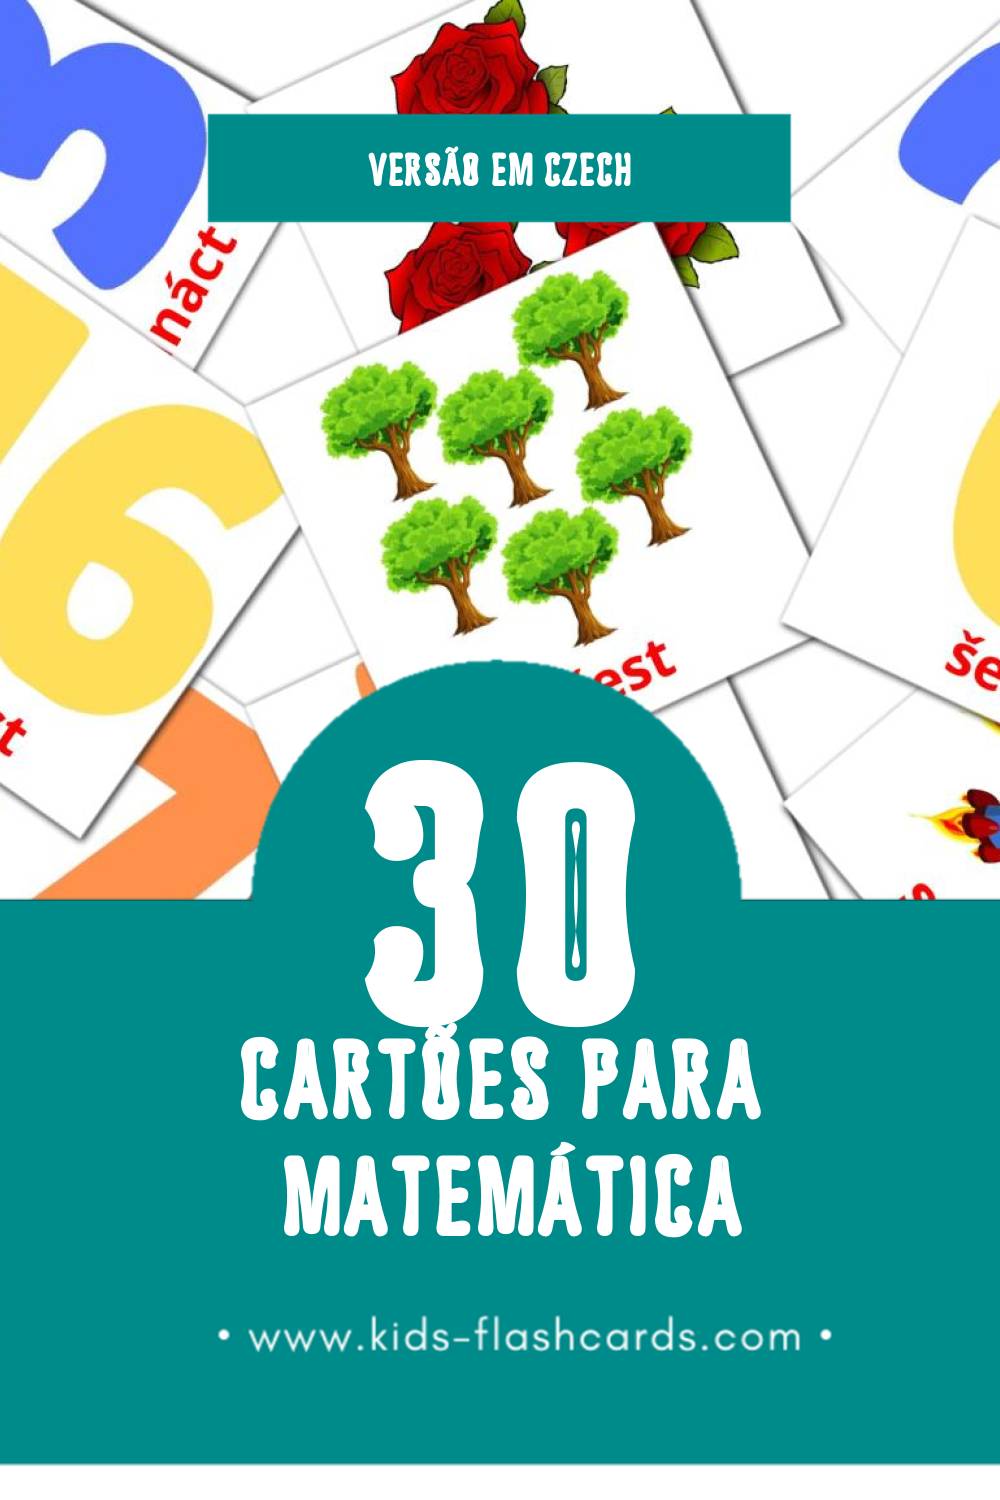 Flashcards de Matematika Visuais para Toddlers (30 cartões em Czech)